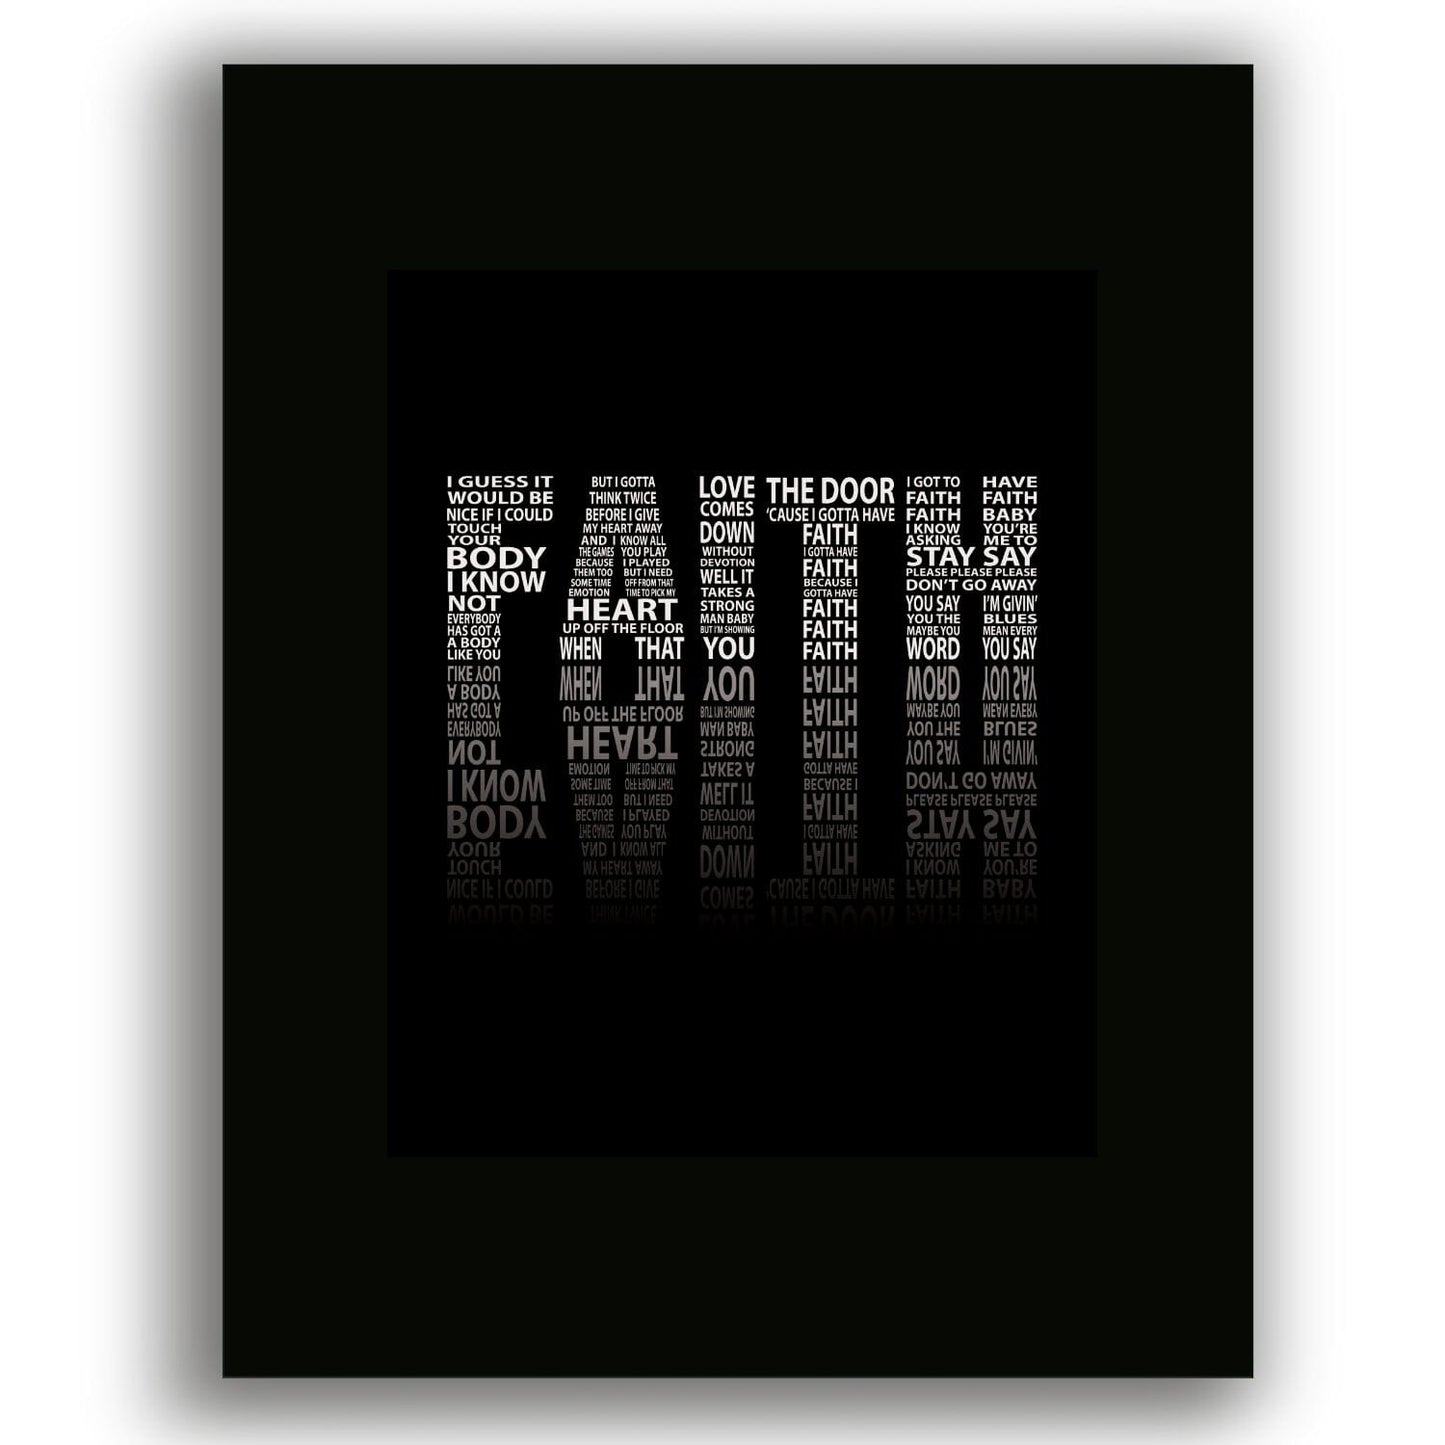 Faith by George Michael - 80s Song Lyric Art Poster Print Song Lyrics Art Song Lyrics Art 8x10 Black Matted Print 